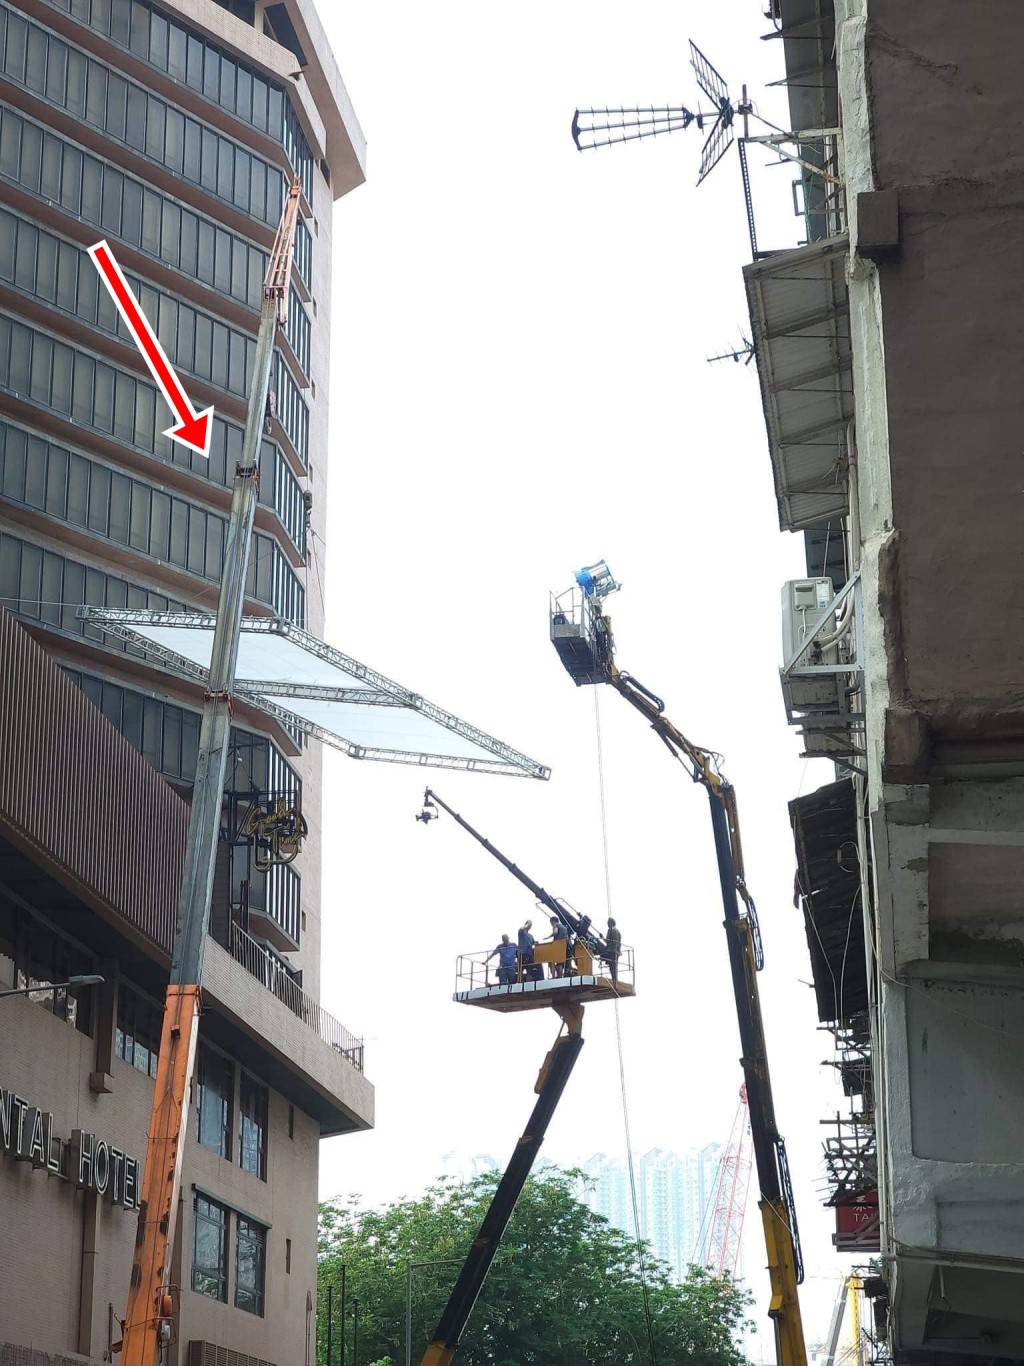 第一部工程車負責吊起補光屏（遮光板）。fb：中科監察